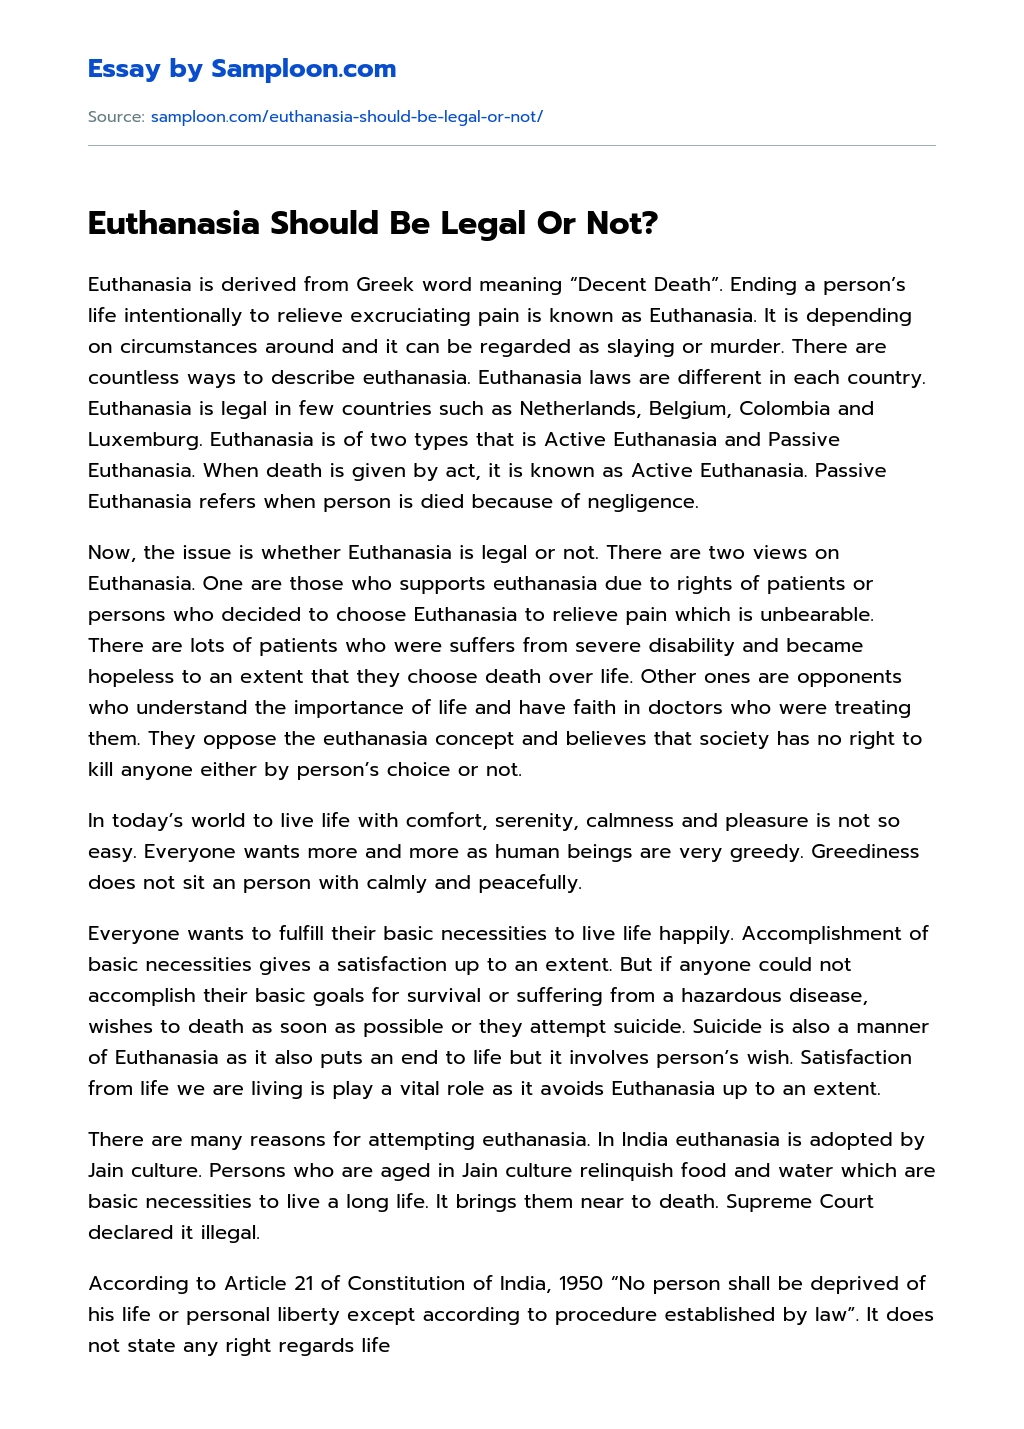 argumentative essay euthanasia should be legalized